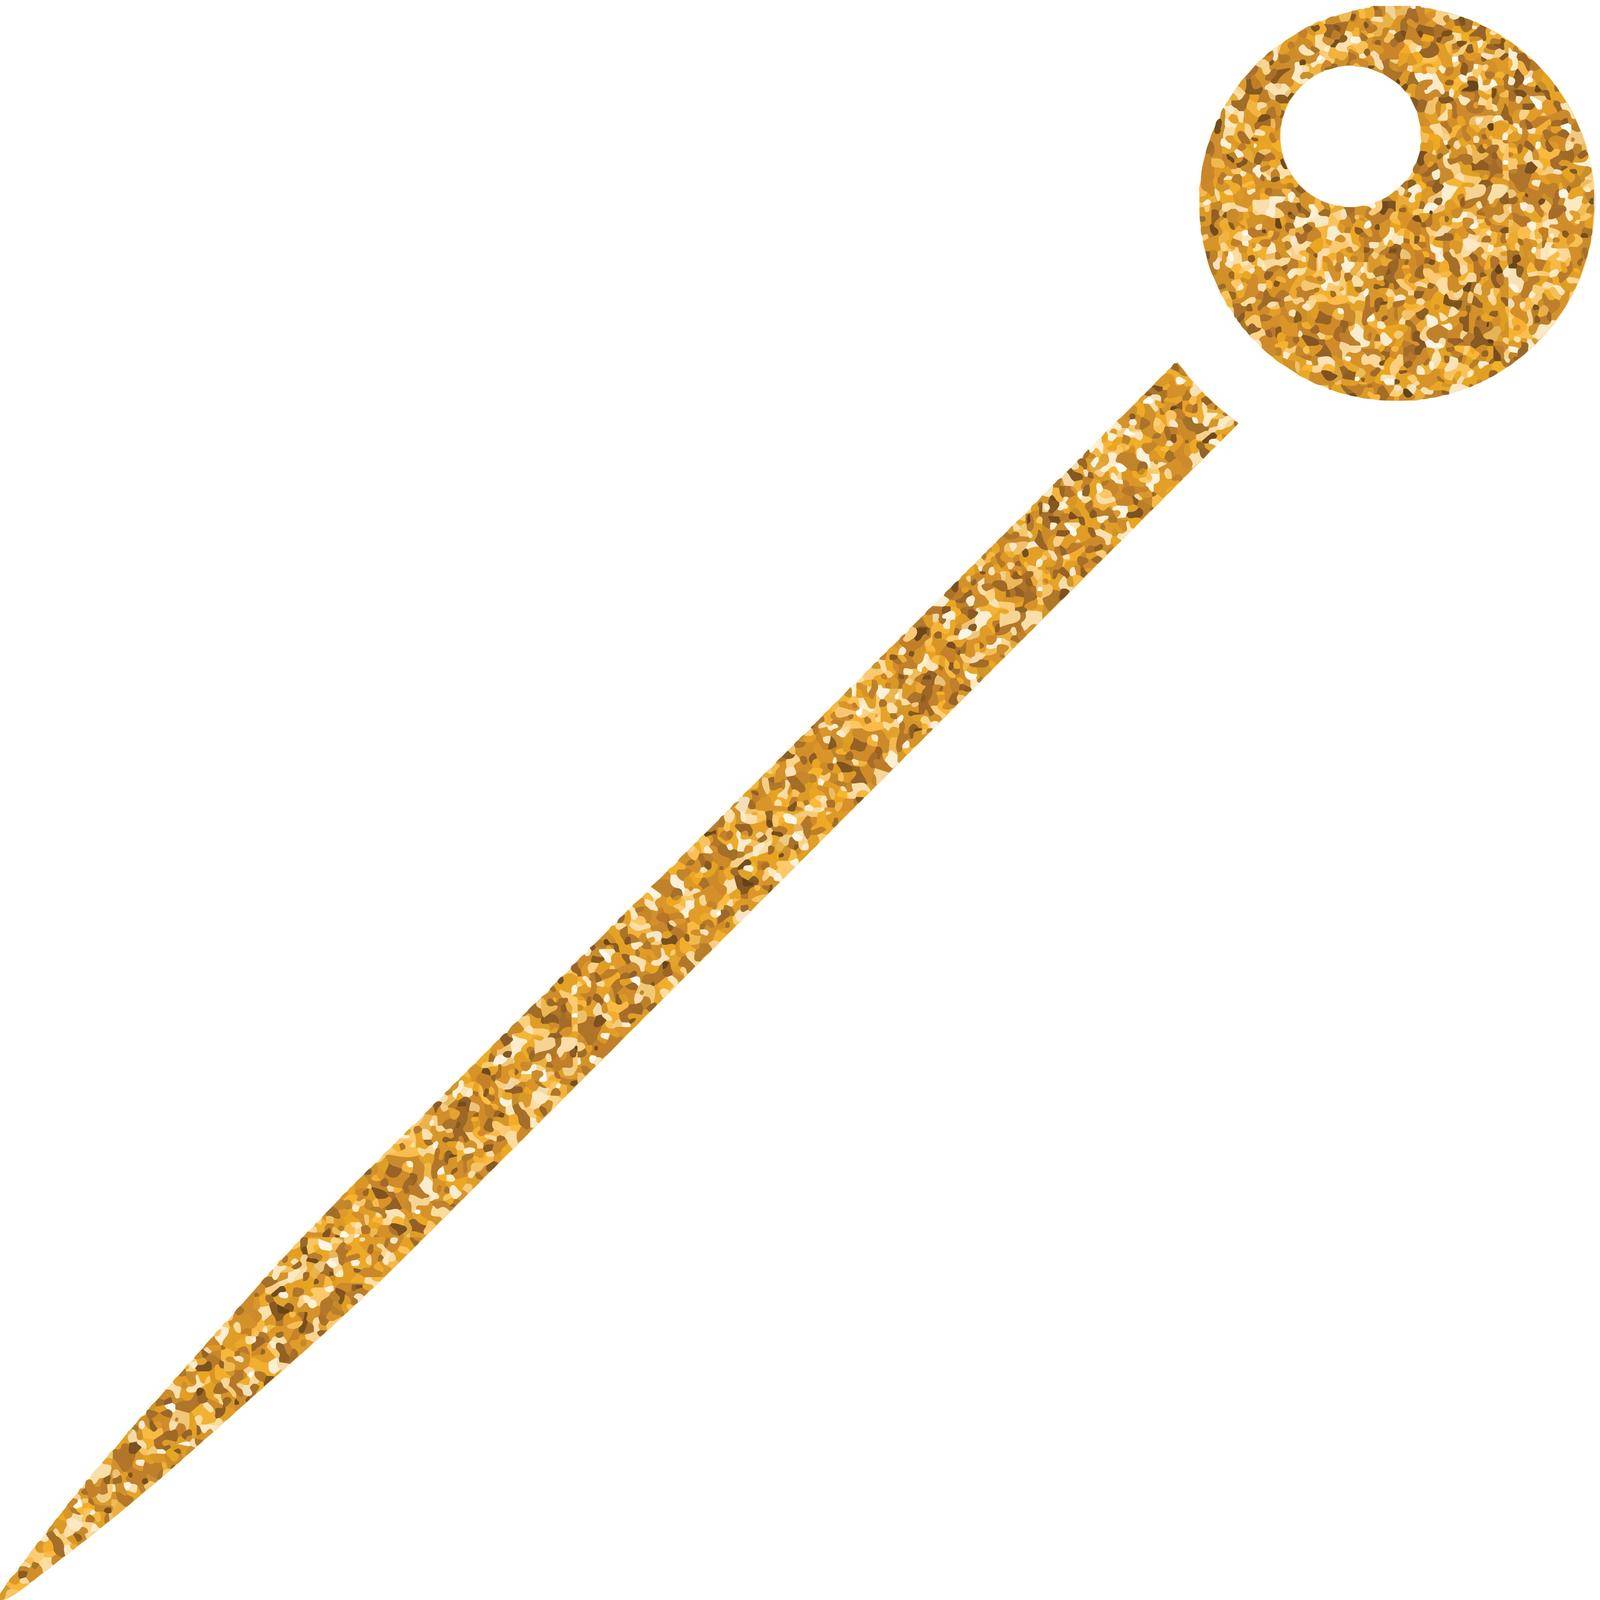 Needle icon in gold glitter texture. Sparkle luxury style vector illustration.